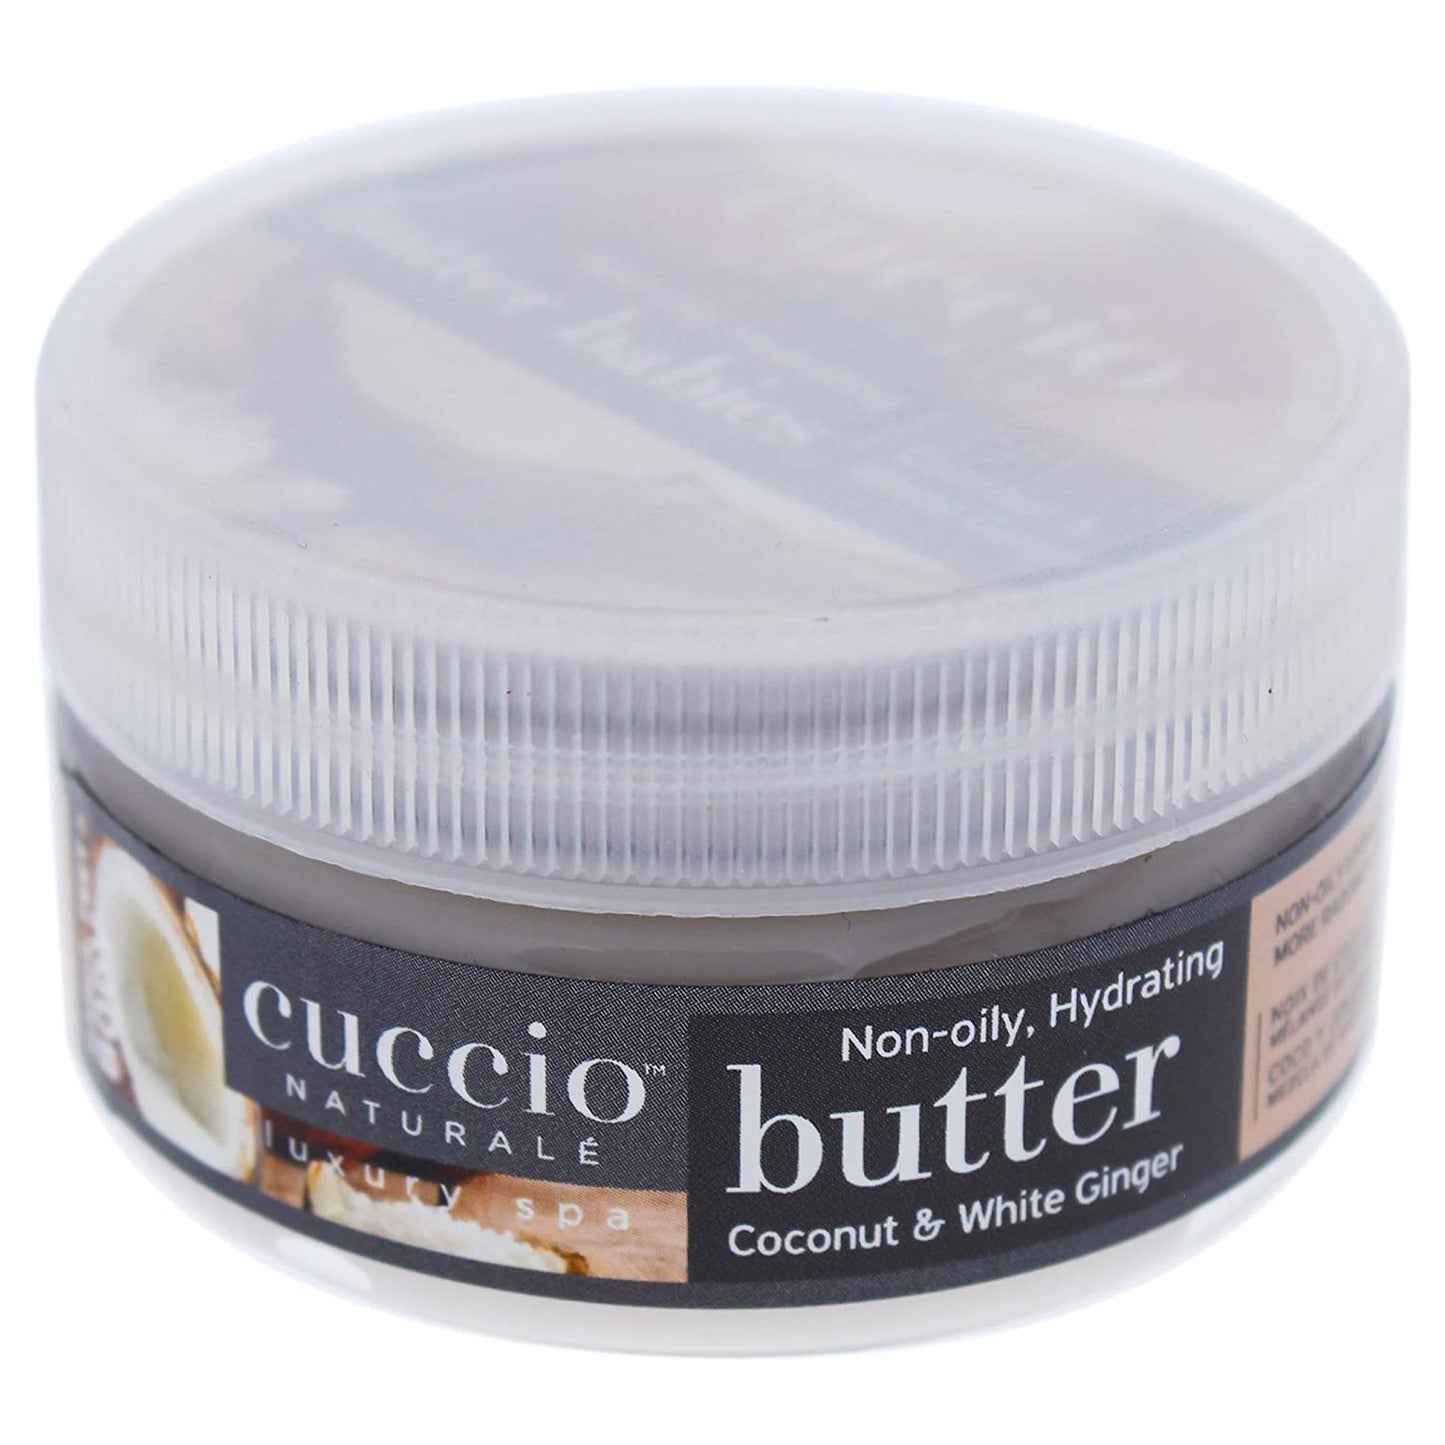 Cuccio Naturale Body Butter 1.5oz